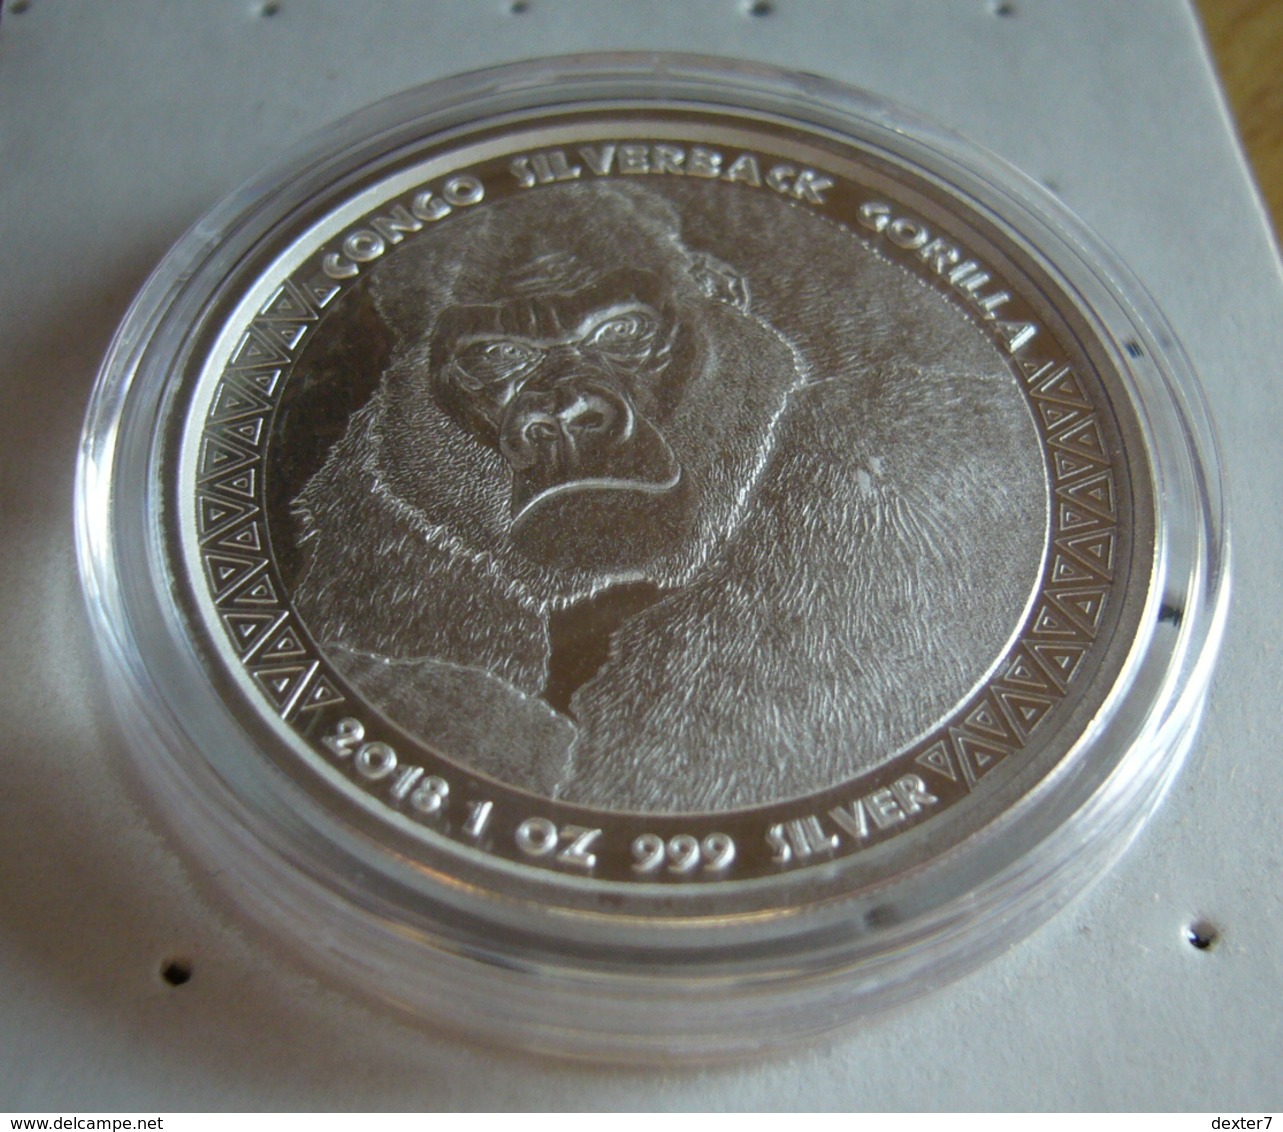 Congo, Gorilla 1 Oz 2018 Silver 999 Pure - 1 Oncia Argento Puro Bullion Scottsdale Mint - Congo (République Démocratique 1998)